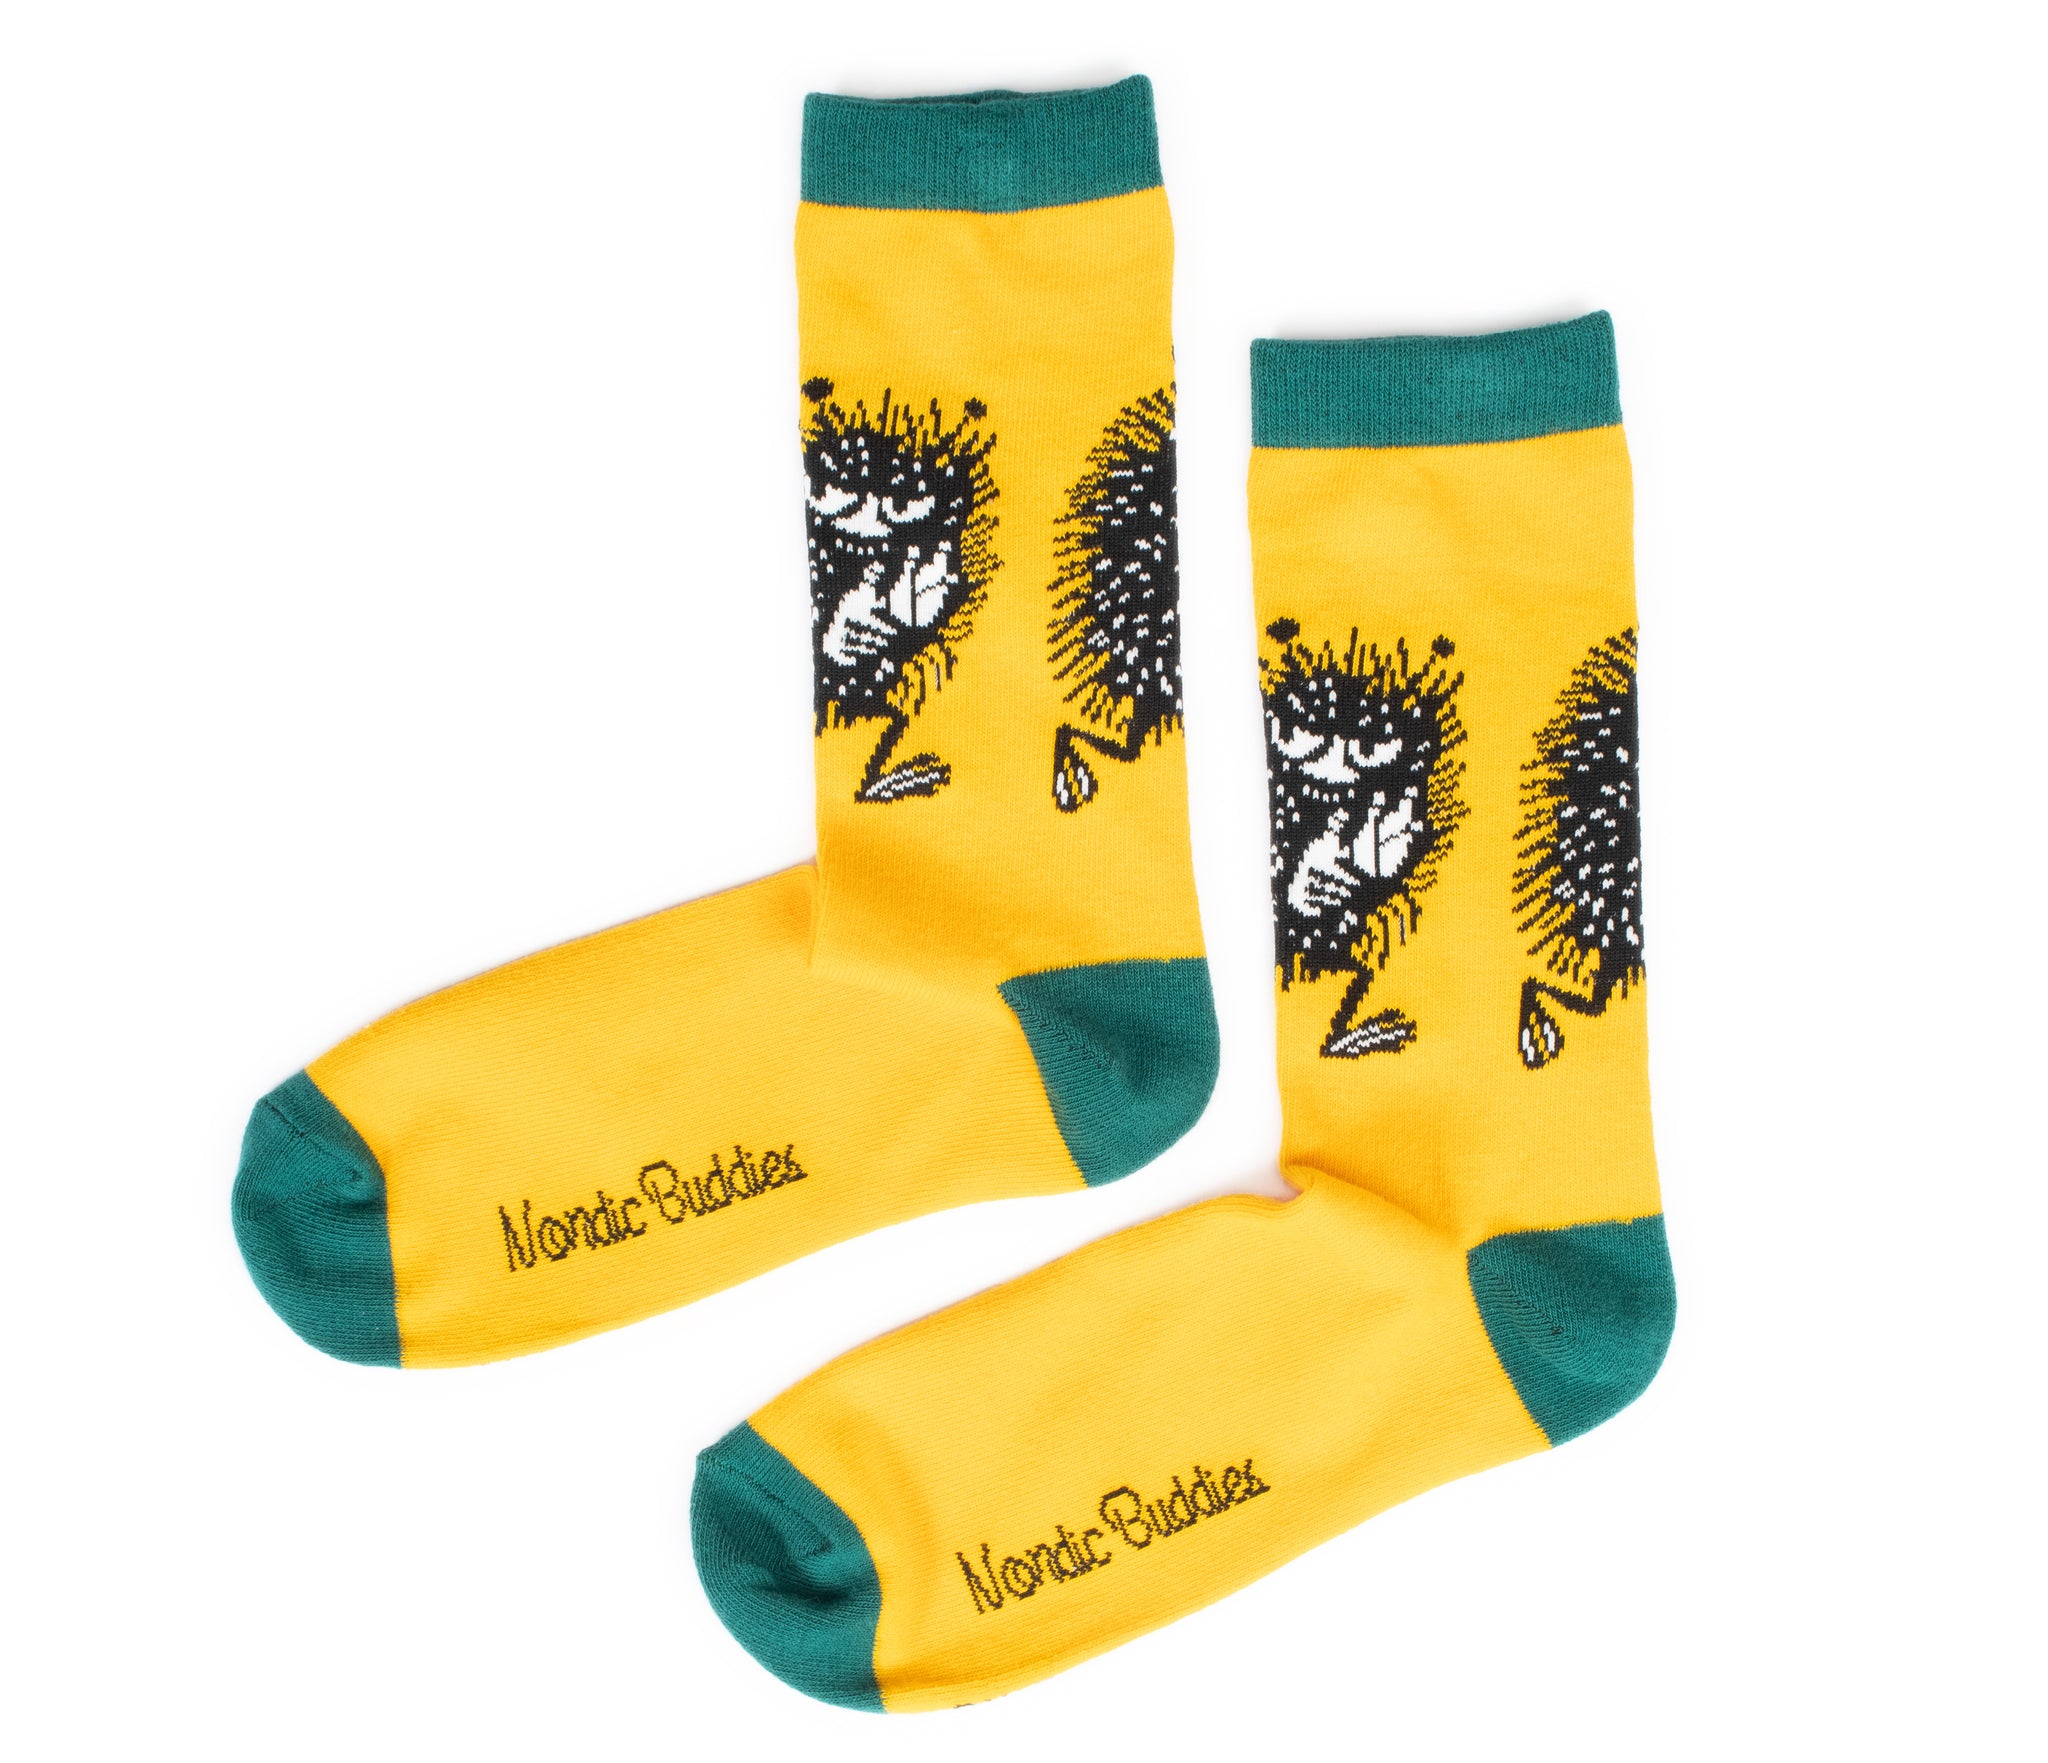 Moomin Men’s Socks Yellow Stinky | Muumi Miesten Sukat Keltainen Haisuli